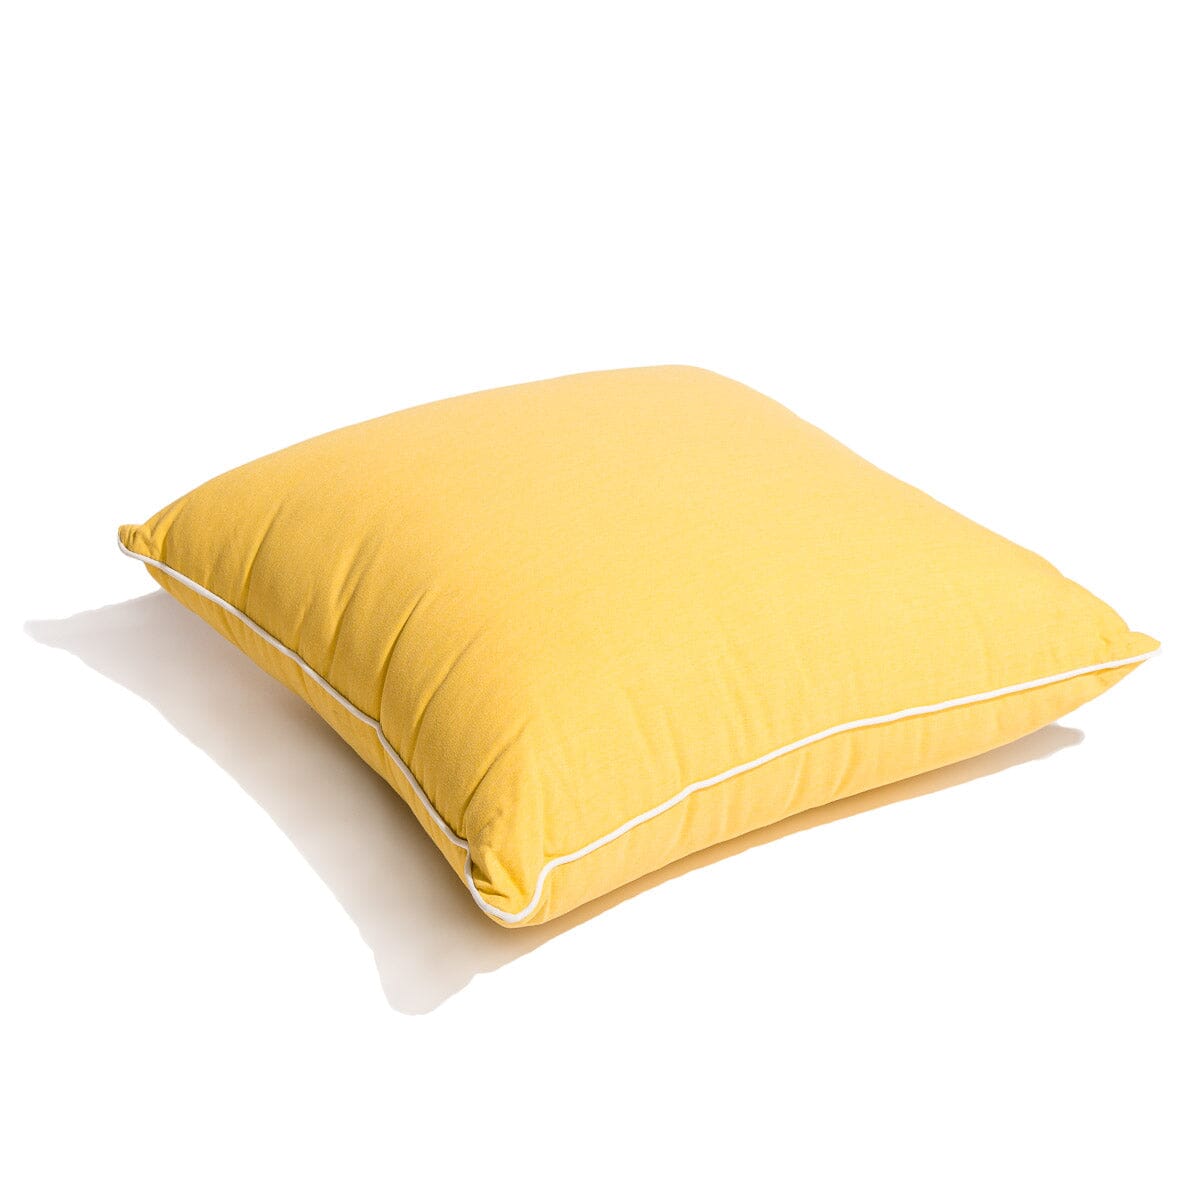 The Euro Throw Pillow - Rivie Mimosa Euro Throw Pillow Business & Pleasure Co Aus 